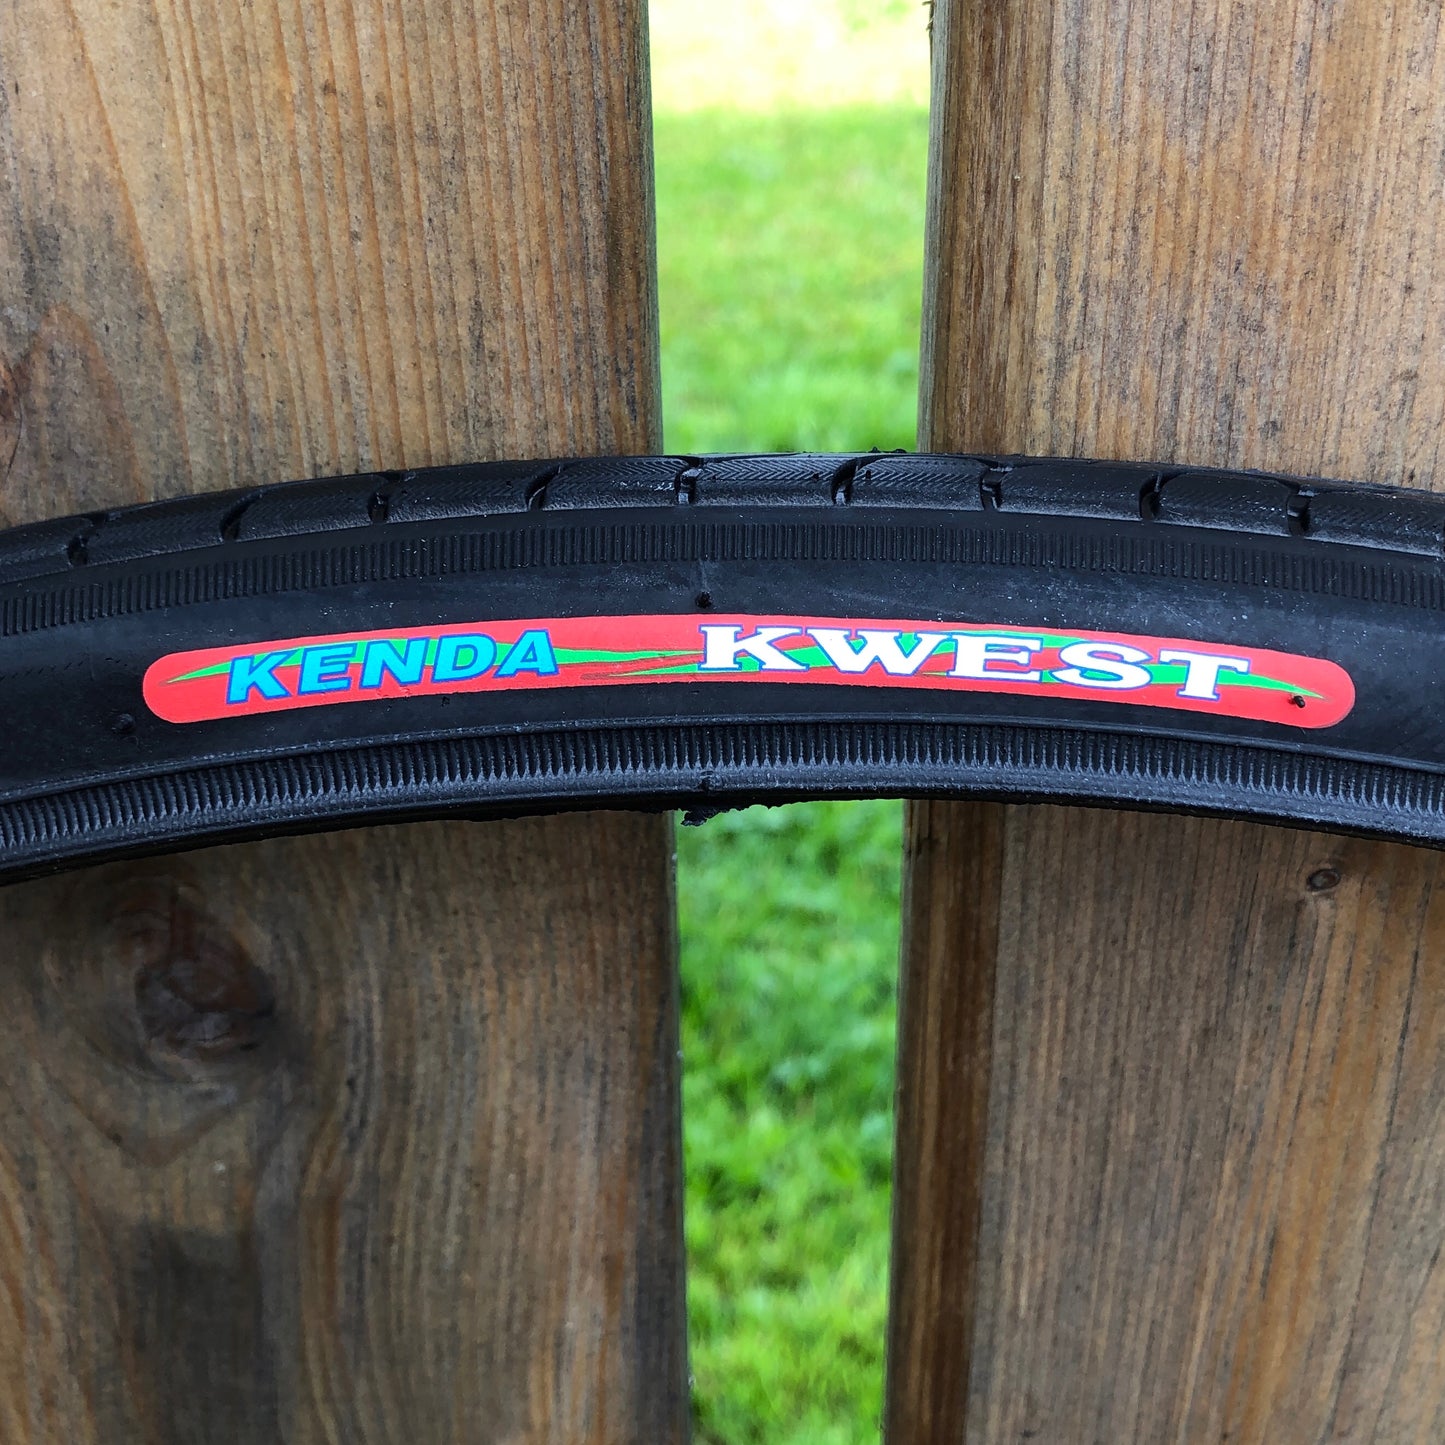 622-Kenda "Kwest" with K-Shield 700 x 28 (28-622) Tire